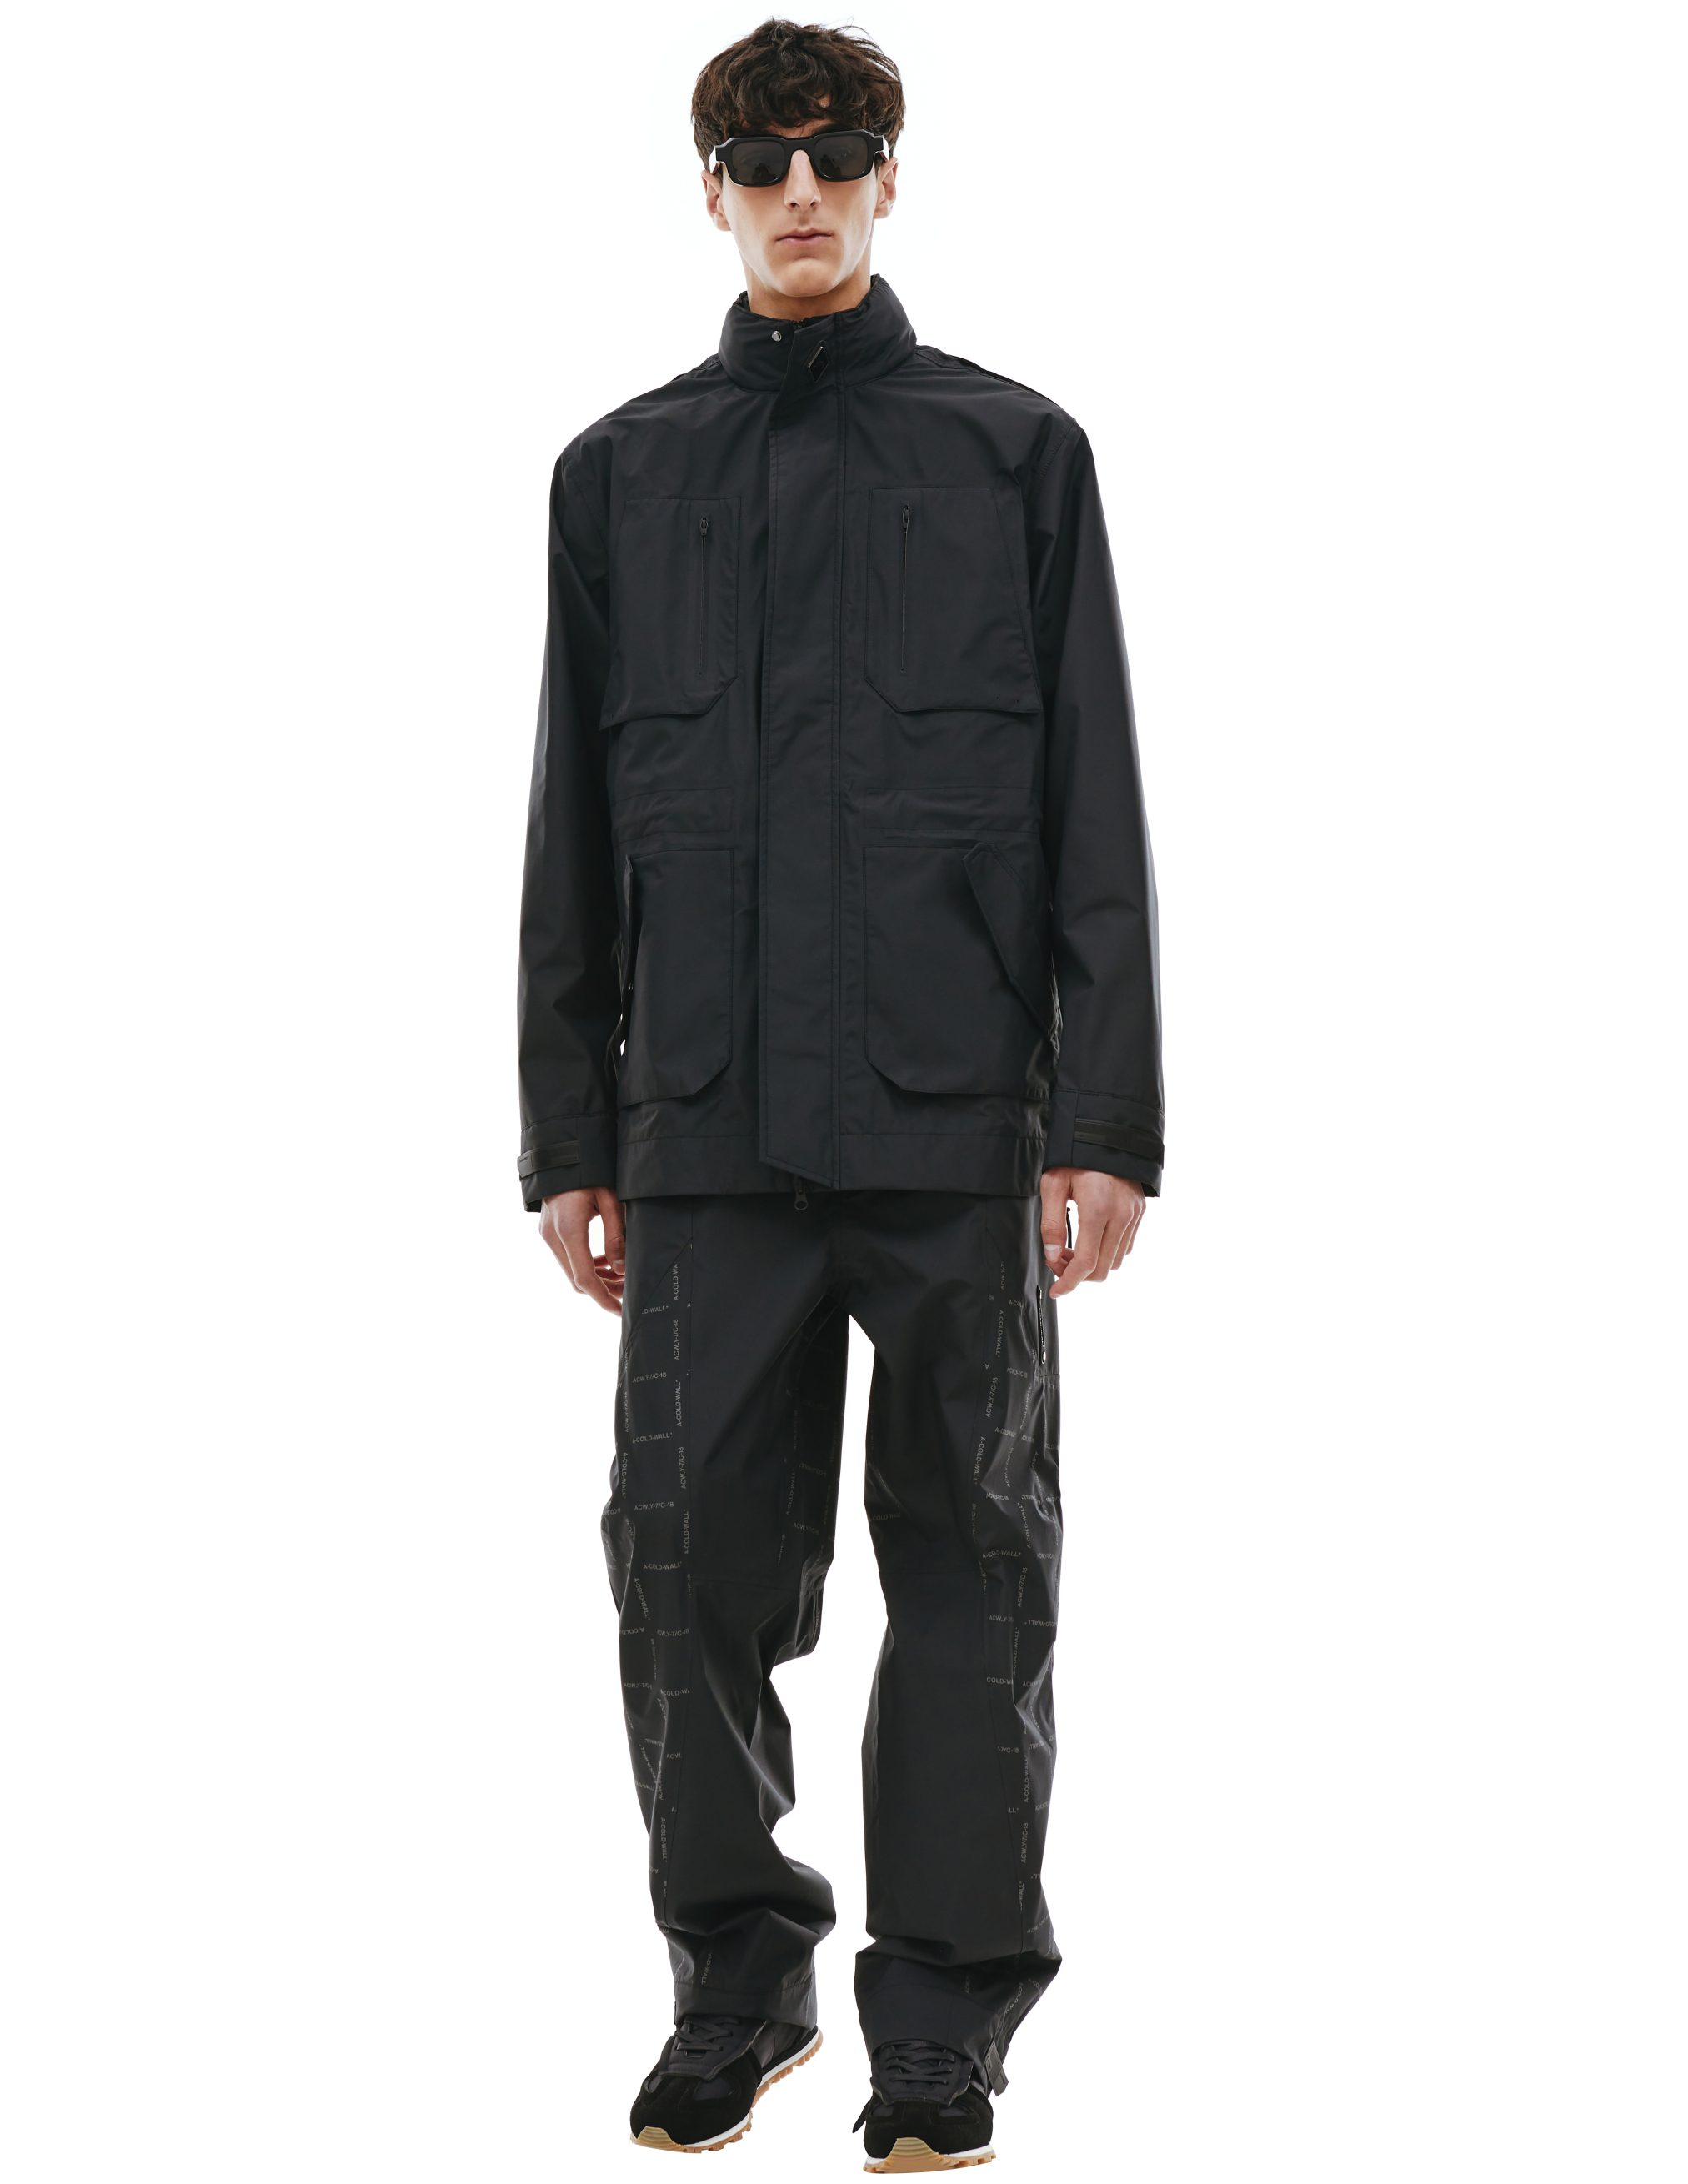 Куртка с накладными карманами A-COLD-WALL* ACWMO153, размер XL;L